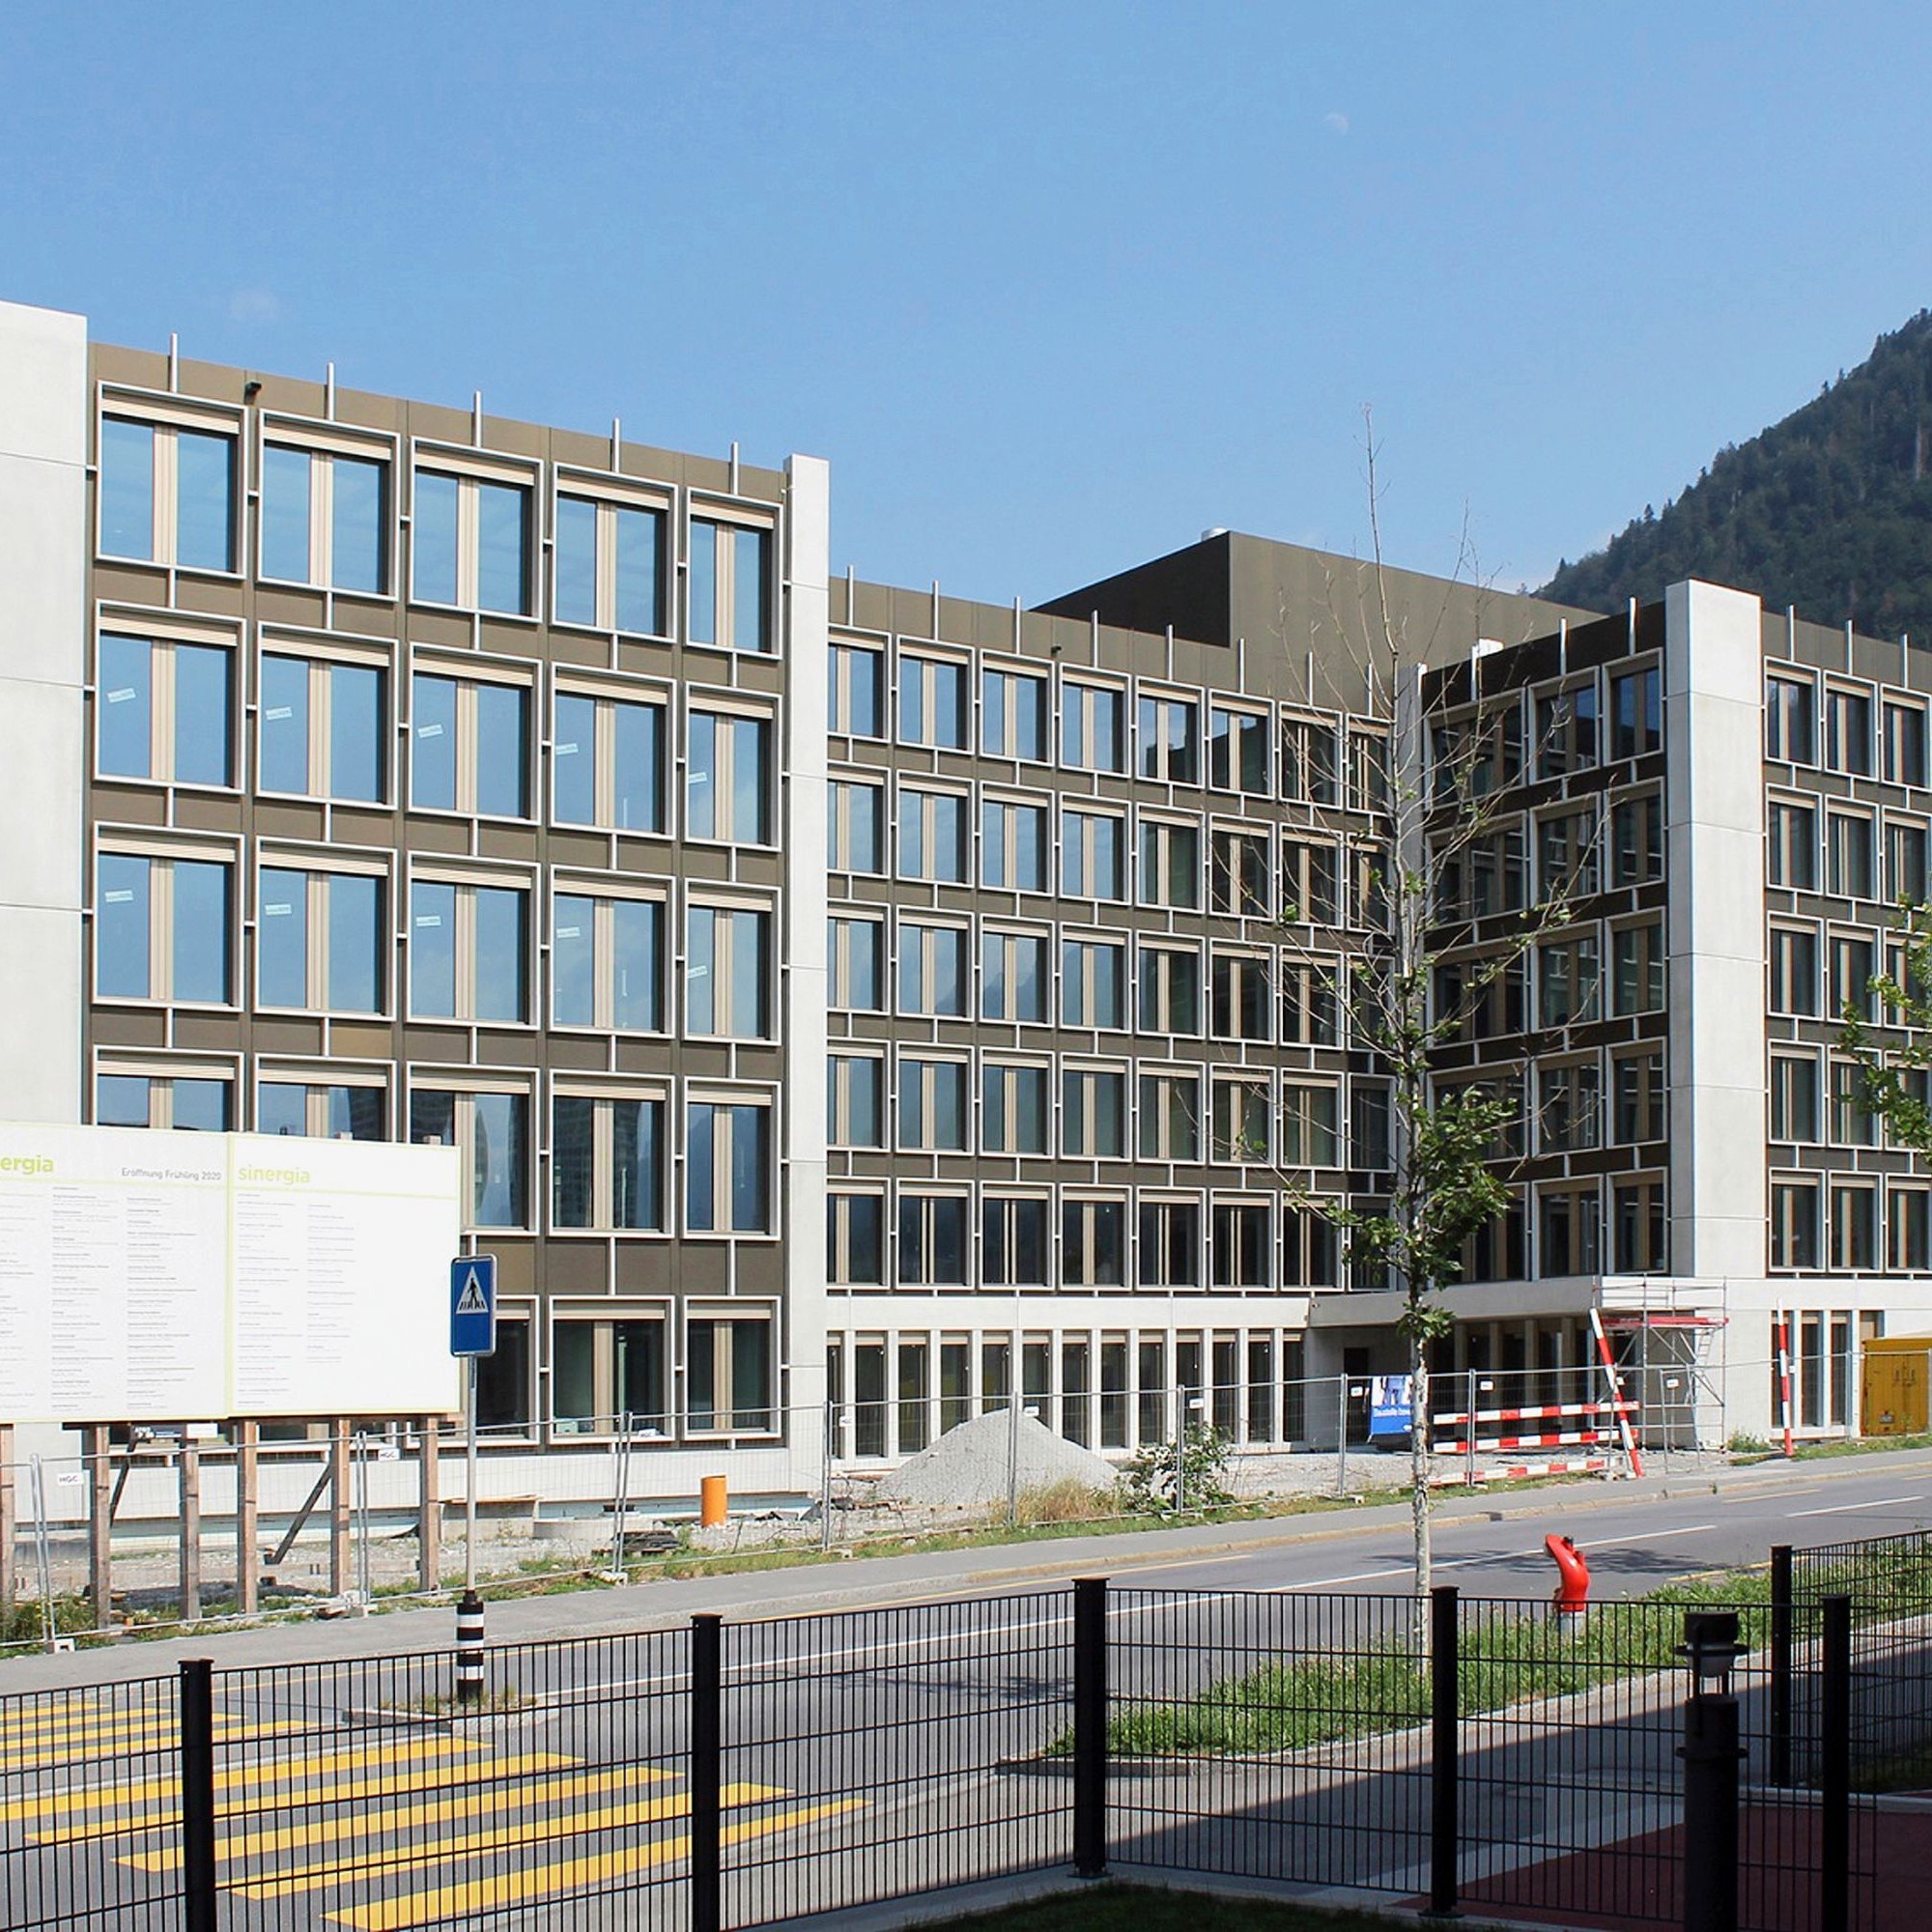 Endspurt auf der Baustelle: Das neue, 72 Millionen Franken teure Verwaltungsgebäude des Kantons Graubünden wird nächstes Frühjahr bezogen und vereint vierzehn Verwaltungseinheiten unter einem Dach.